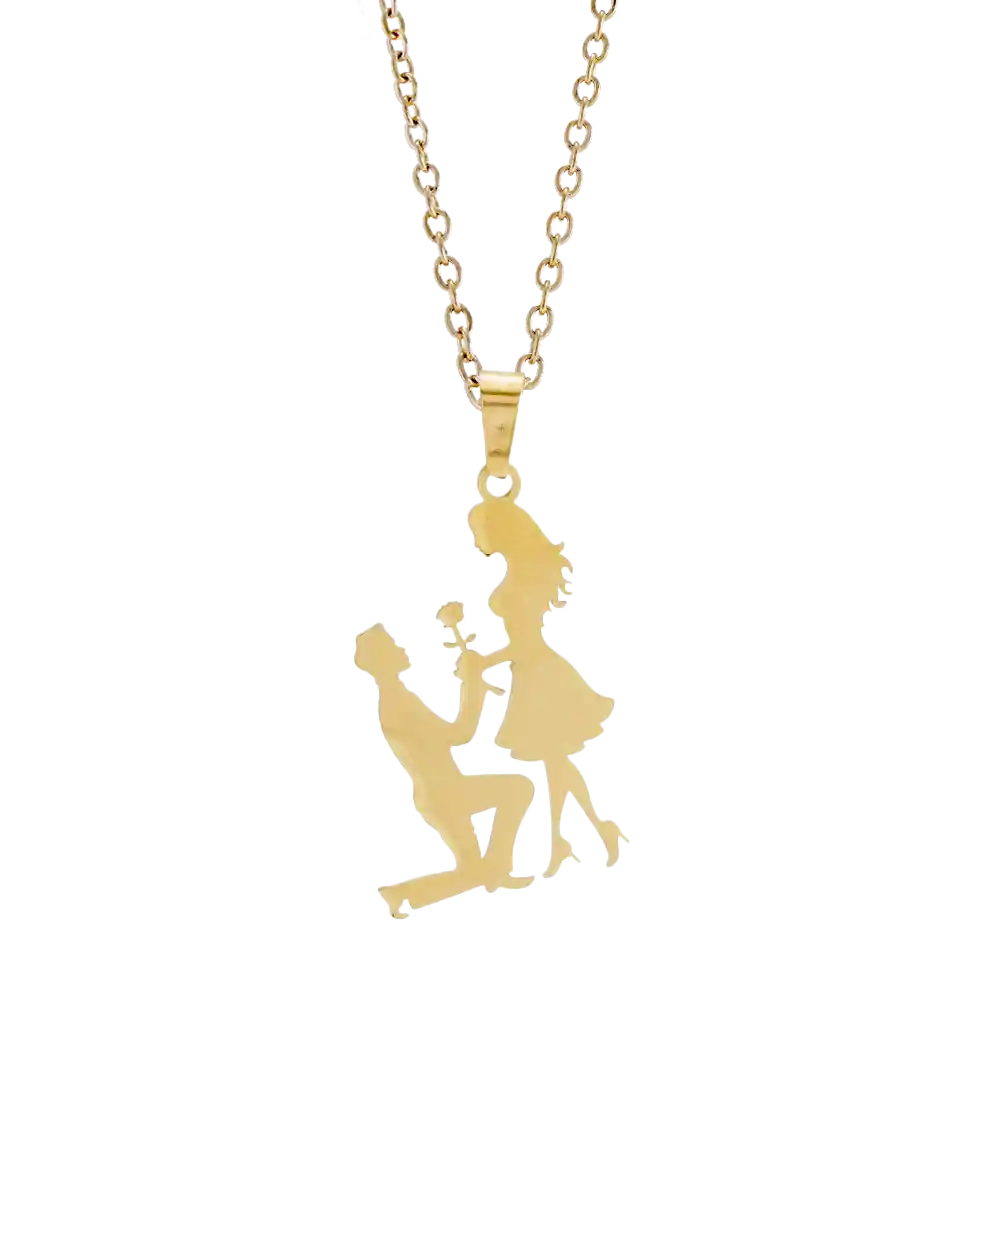 خرید گردنبند مردانه طرح عشق مدل 1835 رنگ طلایی قیمت 129 هزارتومان به همراه ارسال رایگان به سراسر ایران درب منزل و جعبه ی کادویی